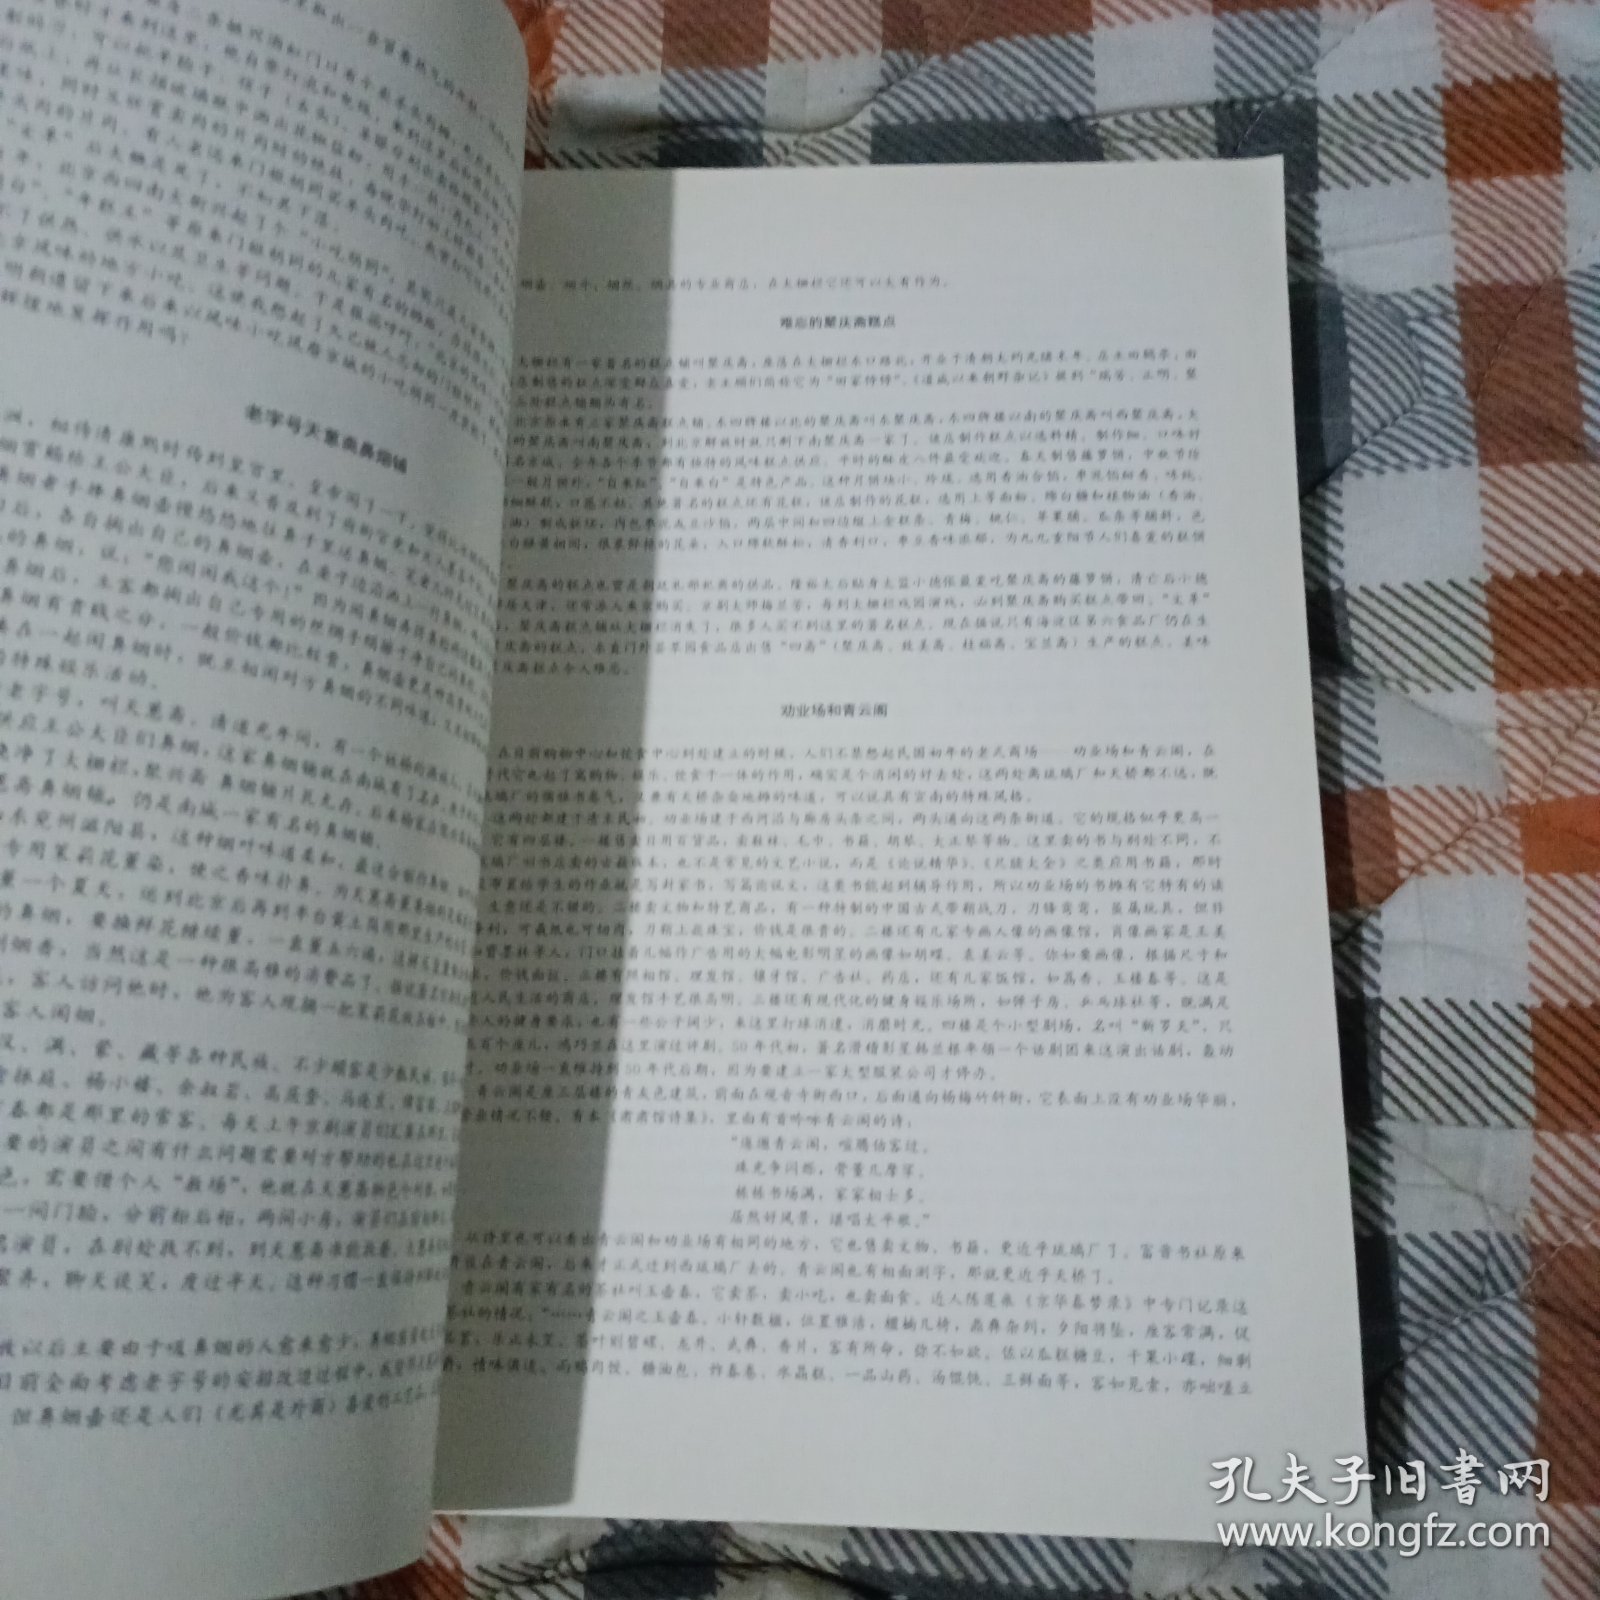 宣南鸿雪图志(1997年一版一印)